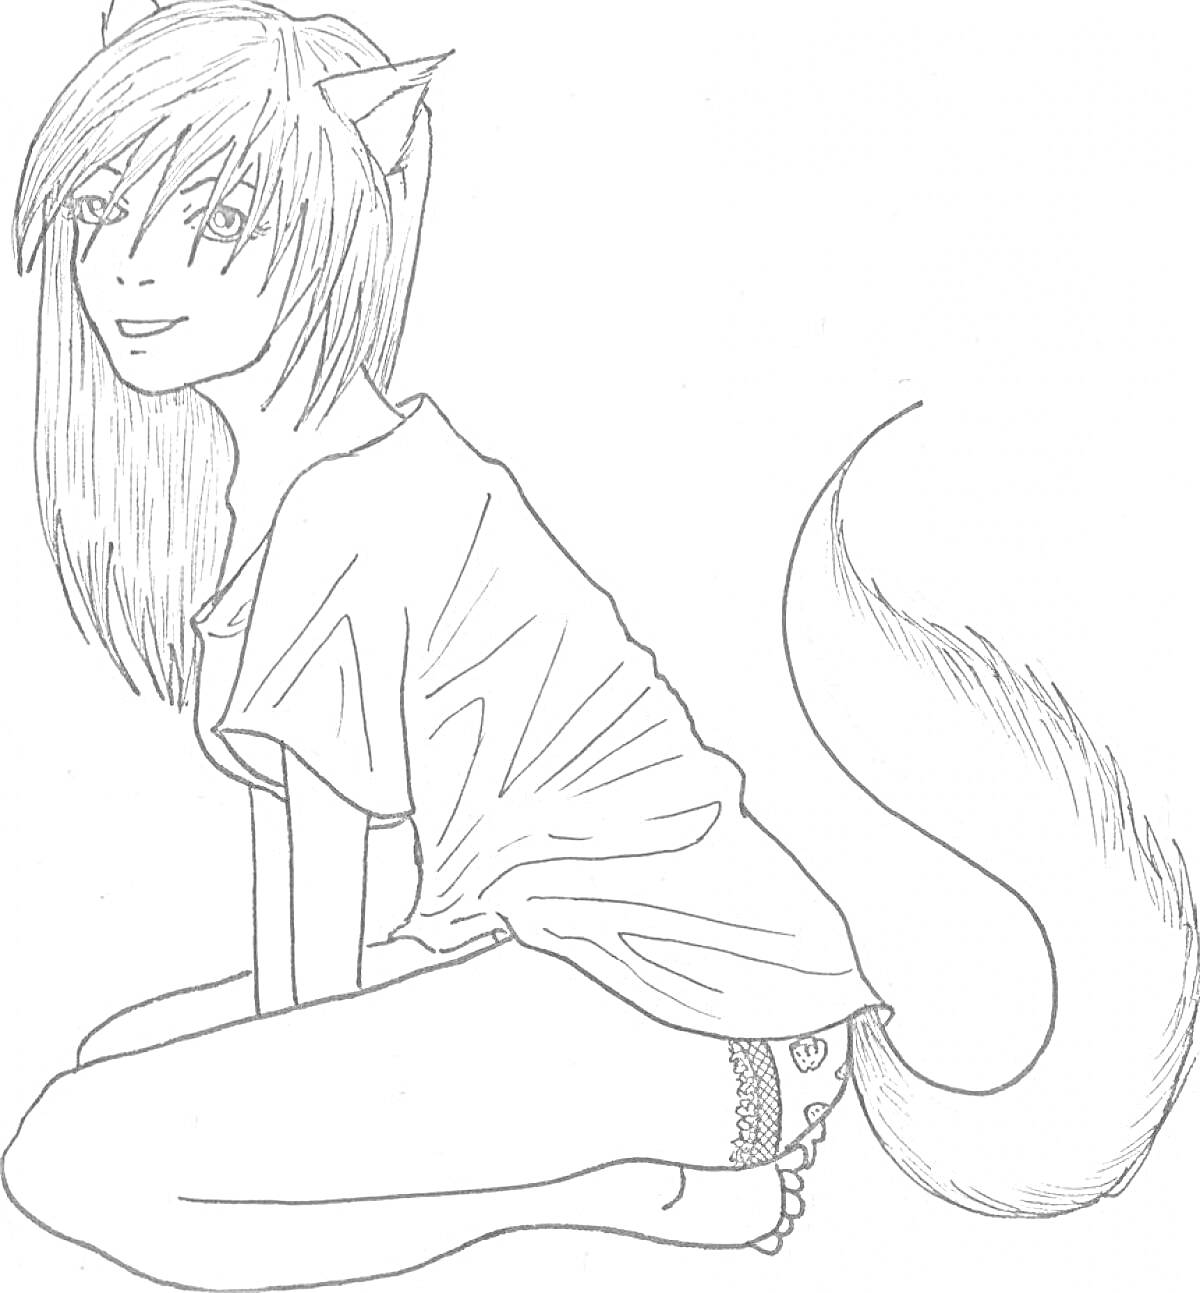 Девушка с кошачьими ушами и хвостом в футболке и трусах, сидящая на земле